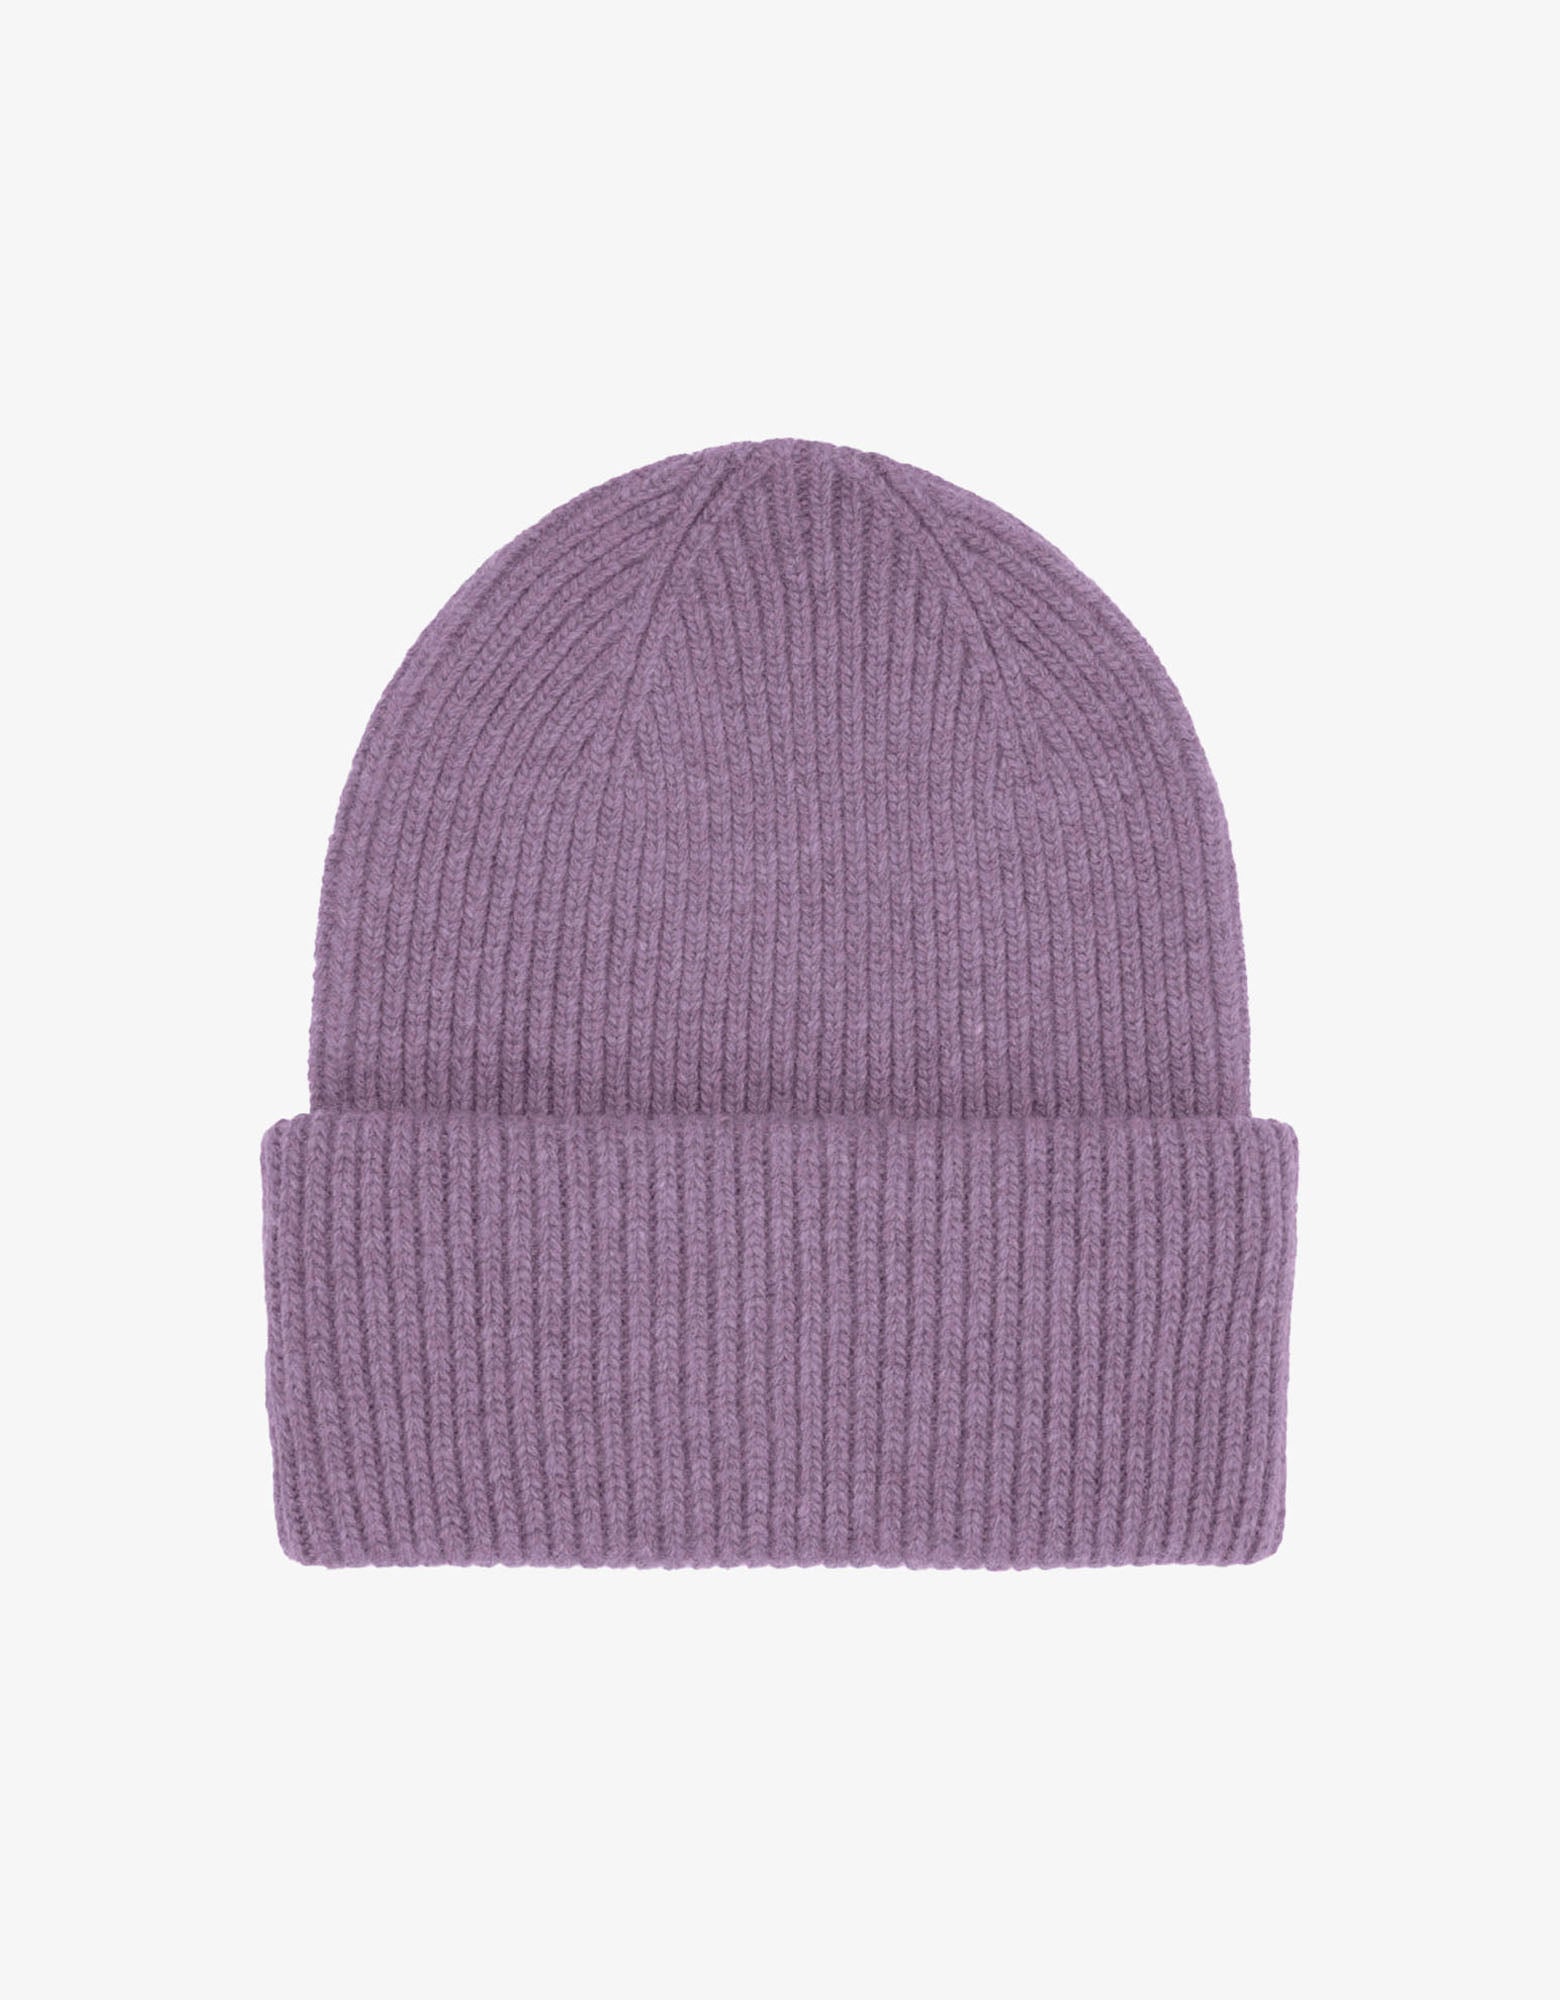 Merino Wool Hat - Purple Haze